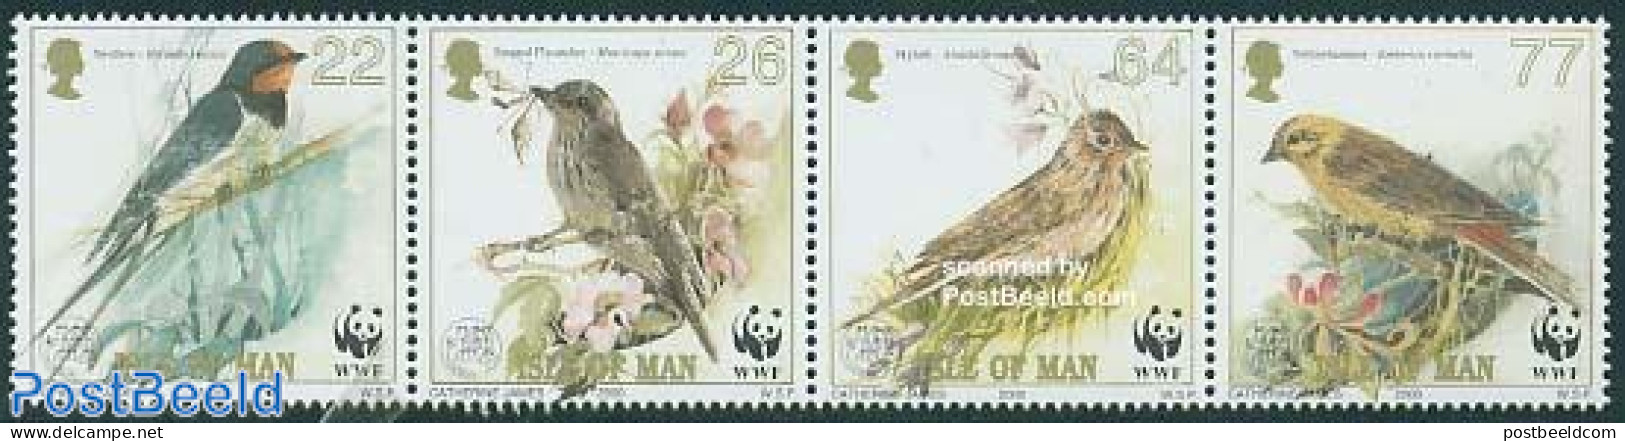 Isle Of Man 2000 WWF, Singing Birds 4v [:::], Mint NH, Nature - Birds - World Wildlife Fund (WWF) - Isle Of Man